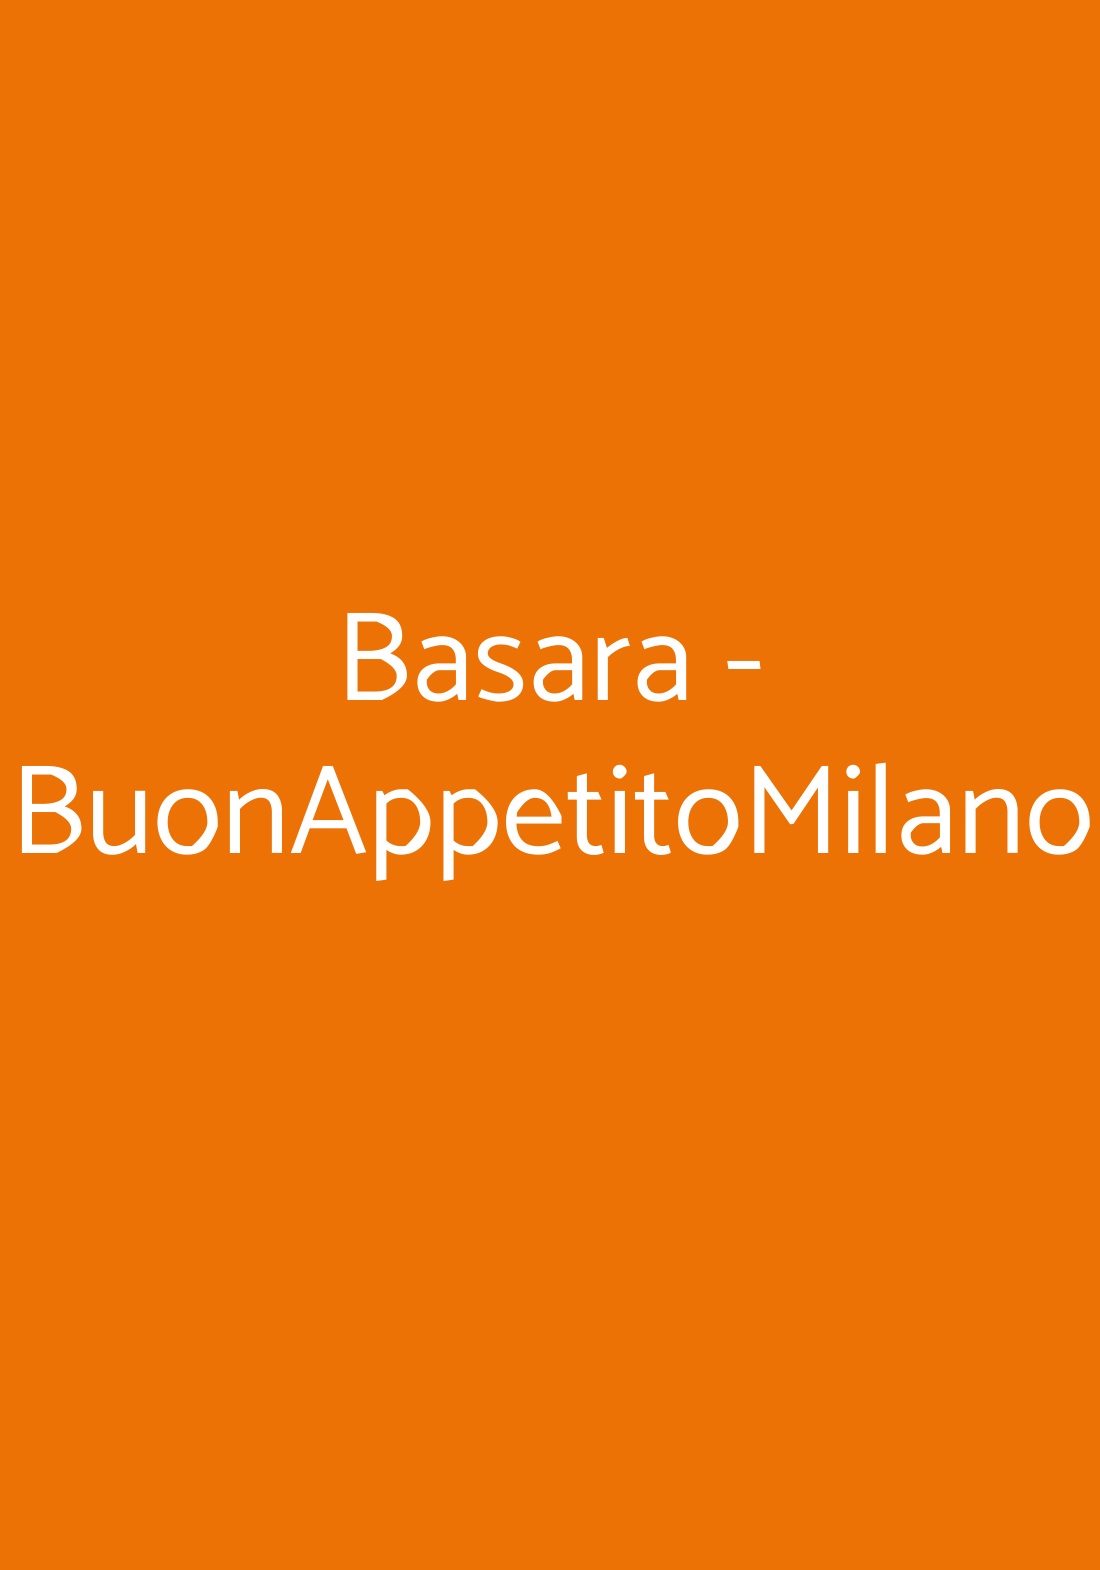 Basara - BuonAppetitoMilano Milano menù 1 pagina